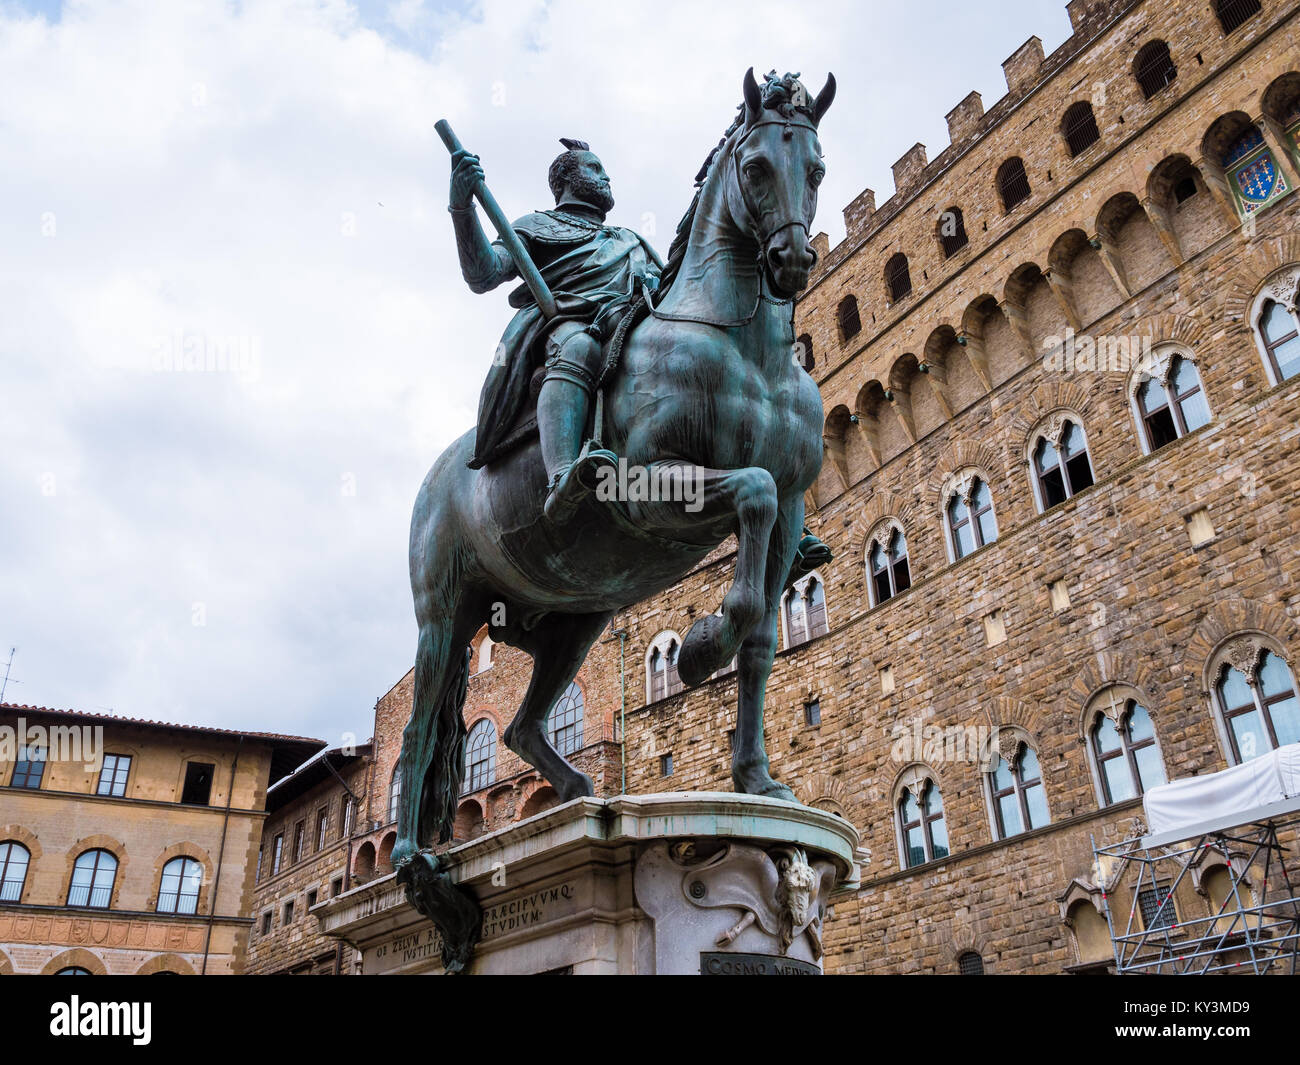 Bronzestatue von Cosimo Medici, sitzend auf einem Pferd, in einem Platz in der Nähe des Palazzo Vecchio in Florenz, Italien Stockfoto